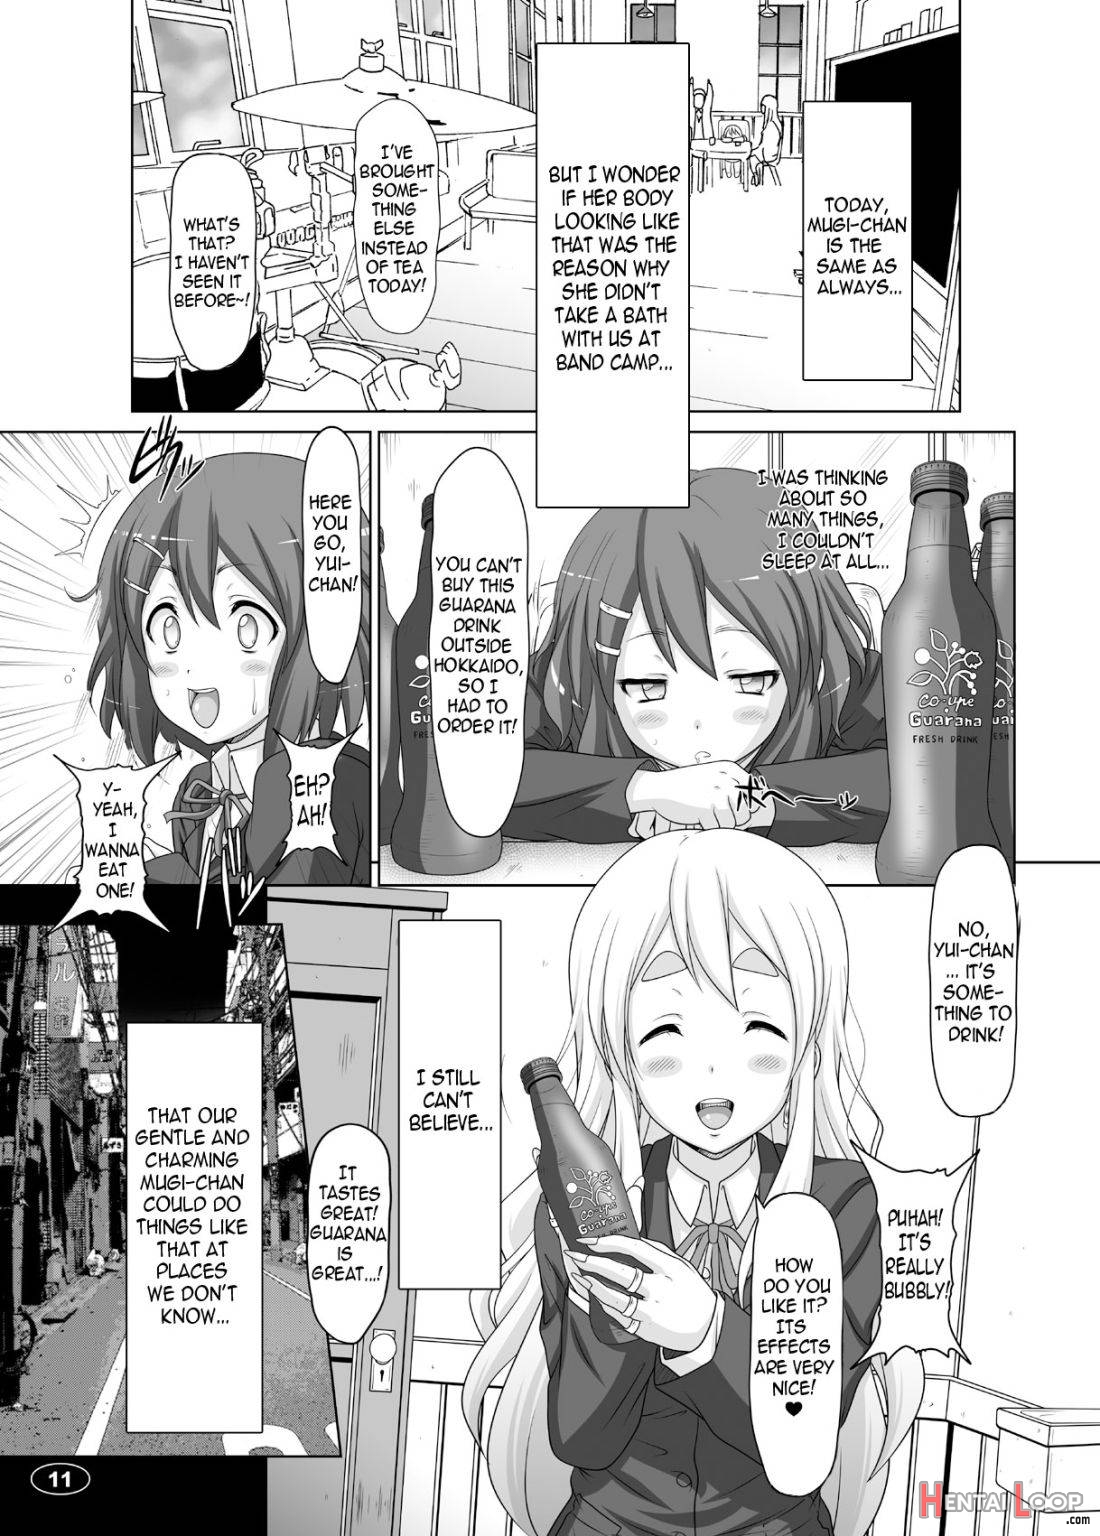 Kuroiro Jikan 2 page 8